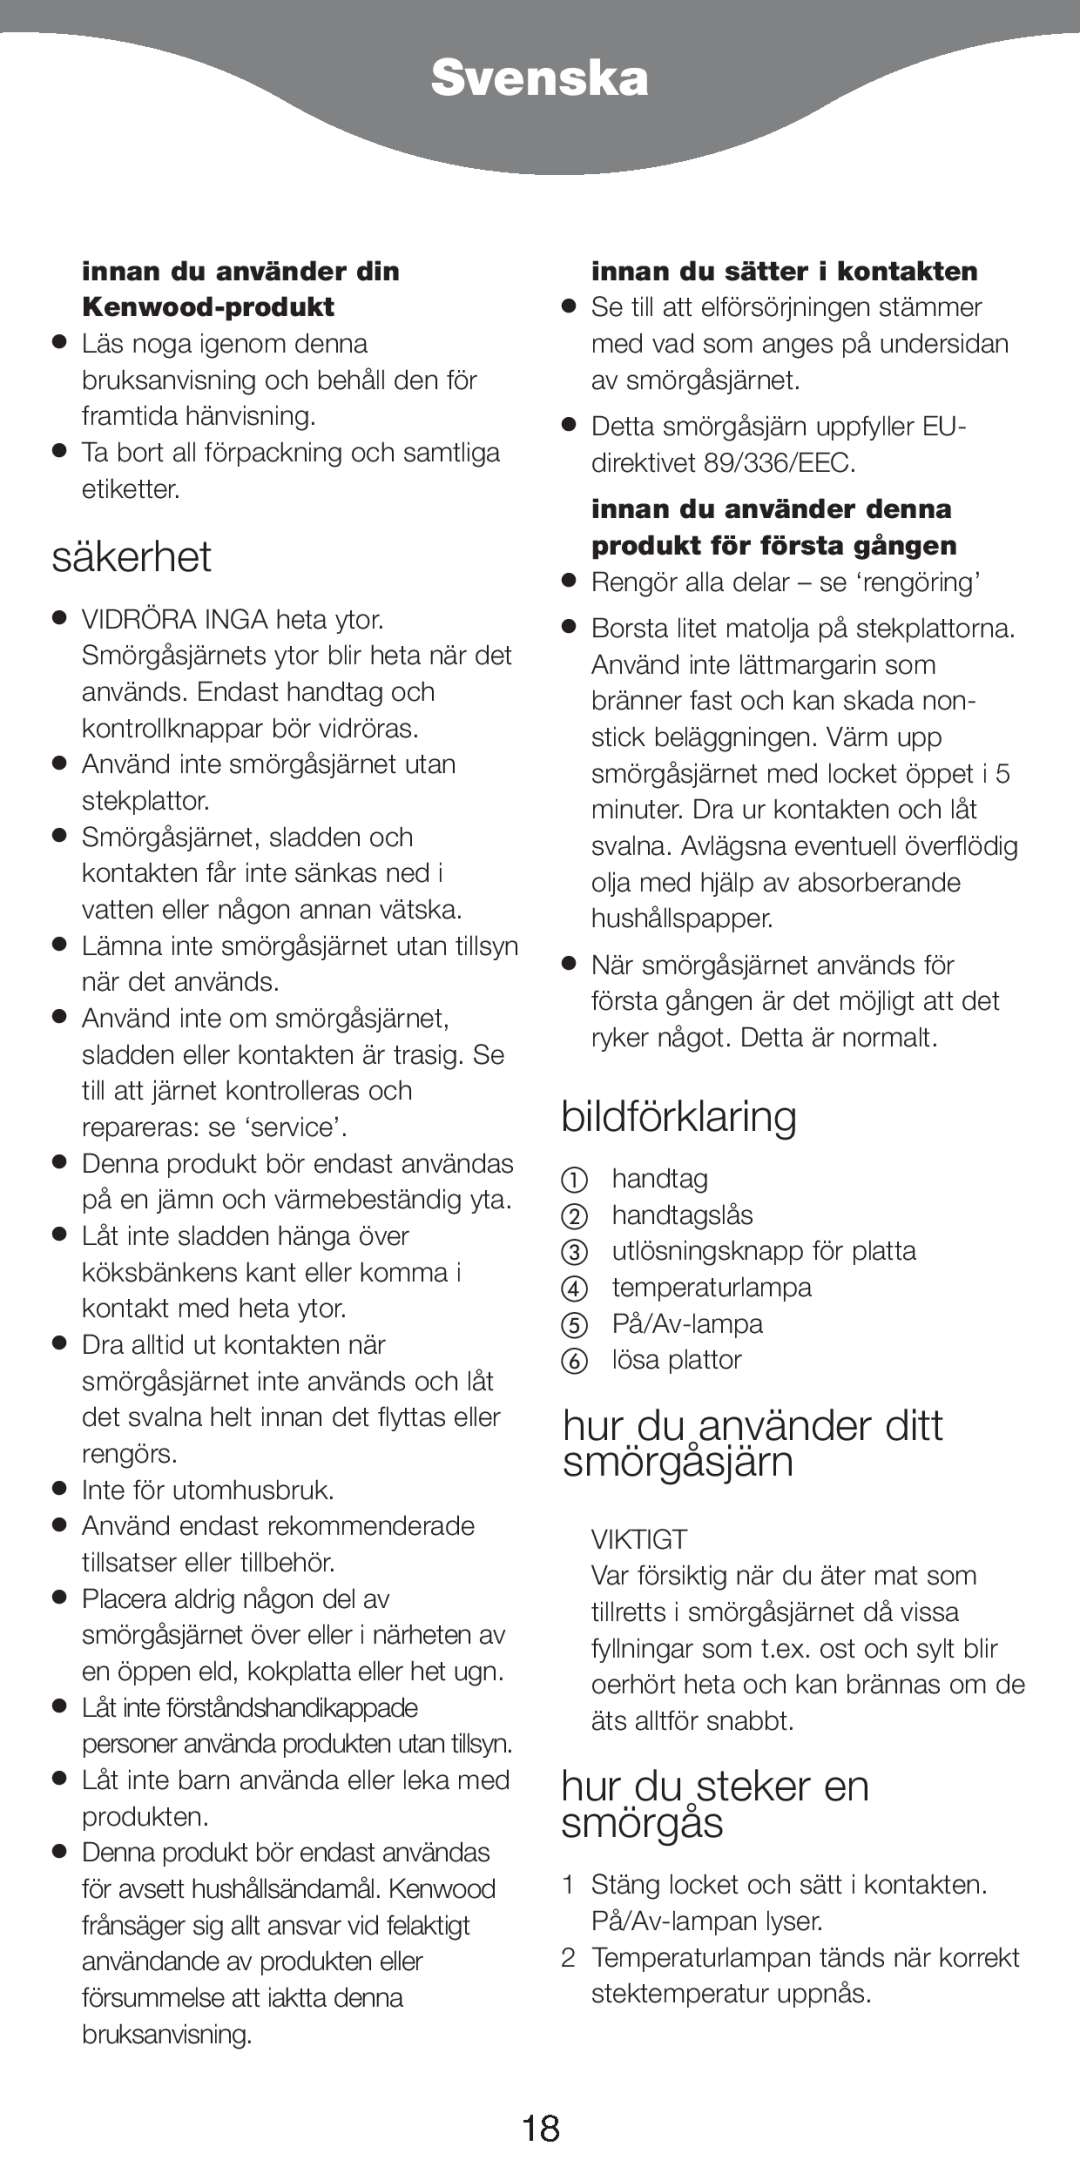 Kenwood SM420 manual Svenska, säkerhet, bildförklaring, hur du använder ditt smörgåsjärn, hur du steker en smörgås 